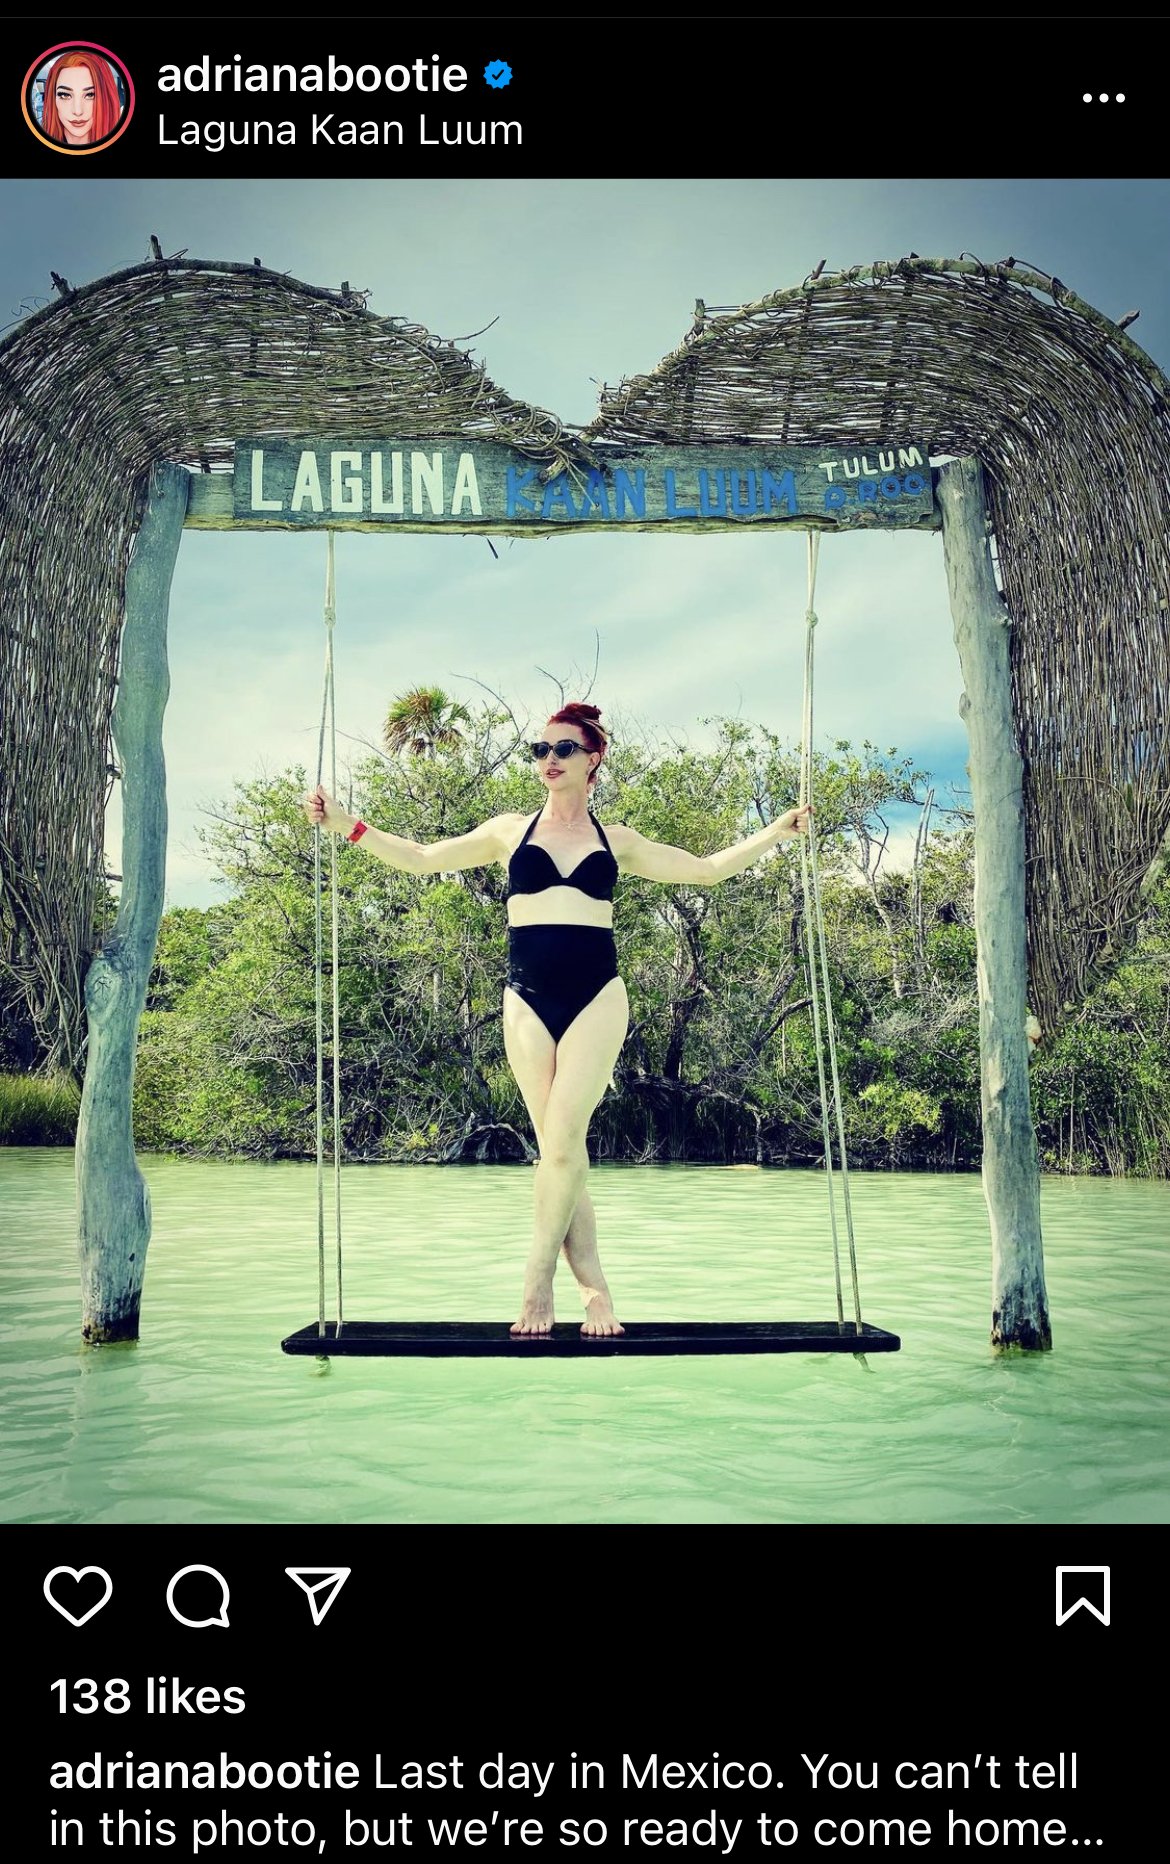 Adriana Bootie in Laguna Kaan Luum, Mexico on a swing over water wearing a black bikini